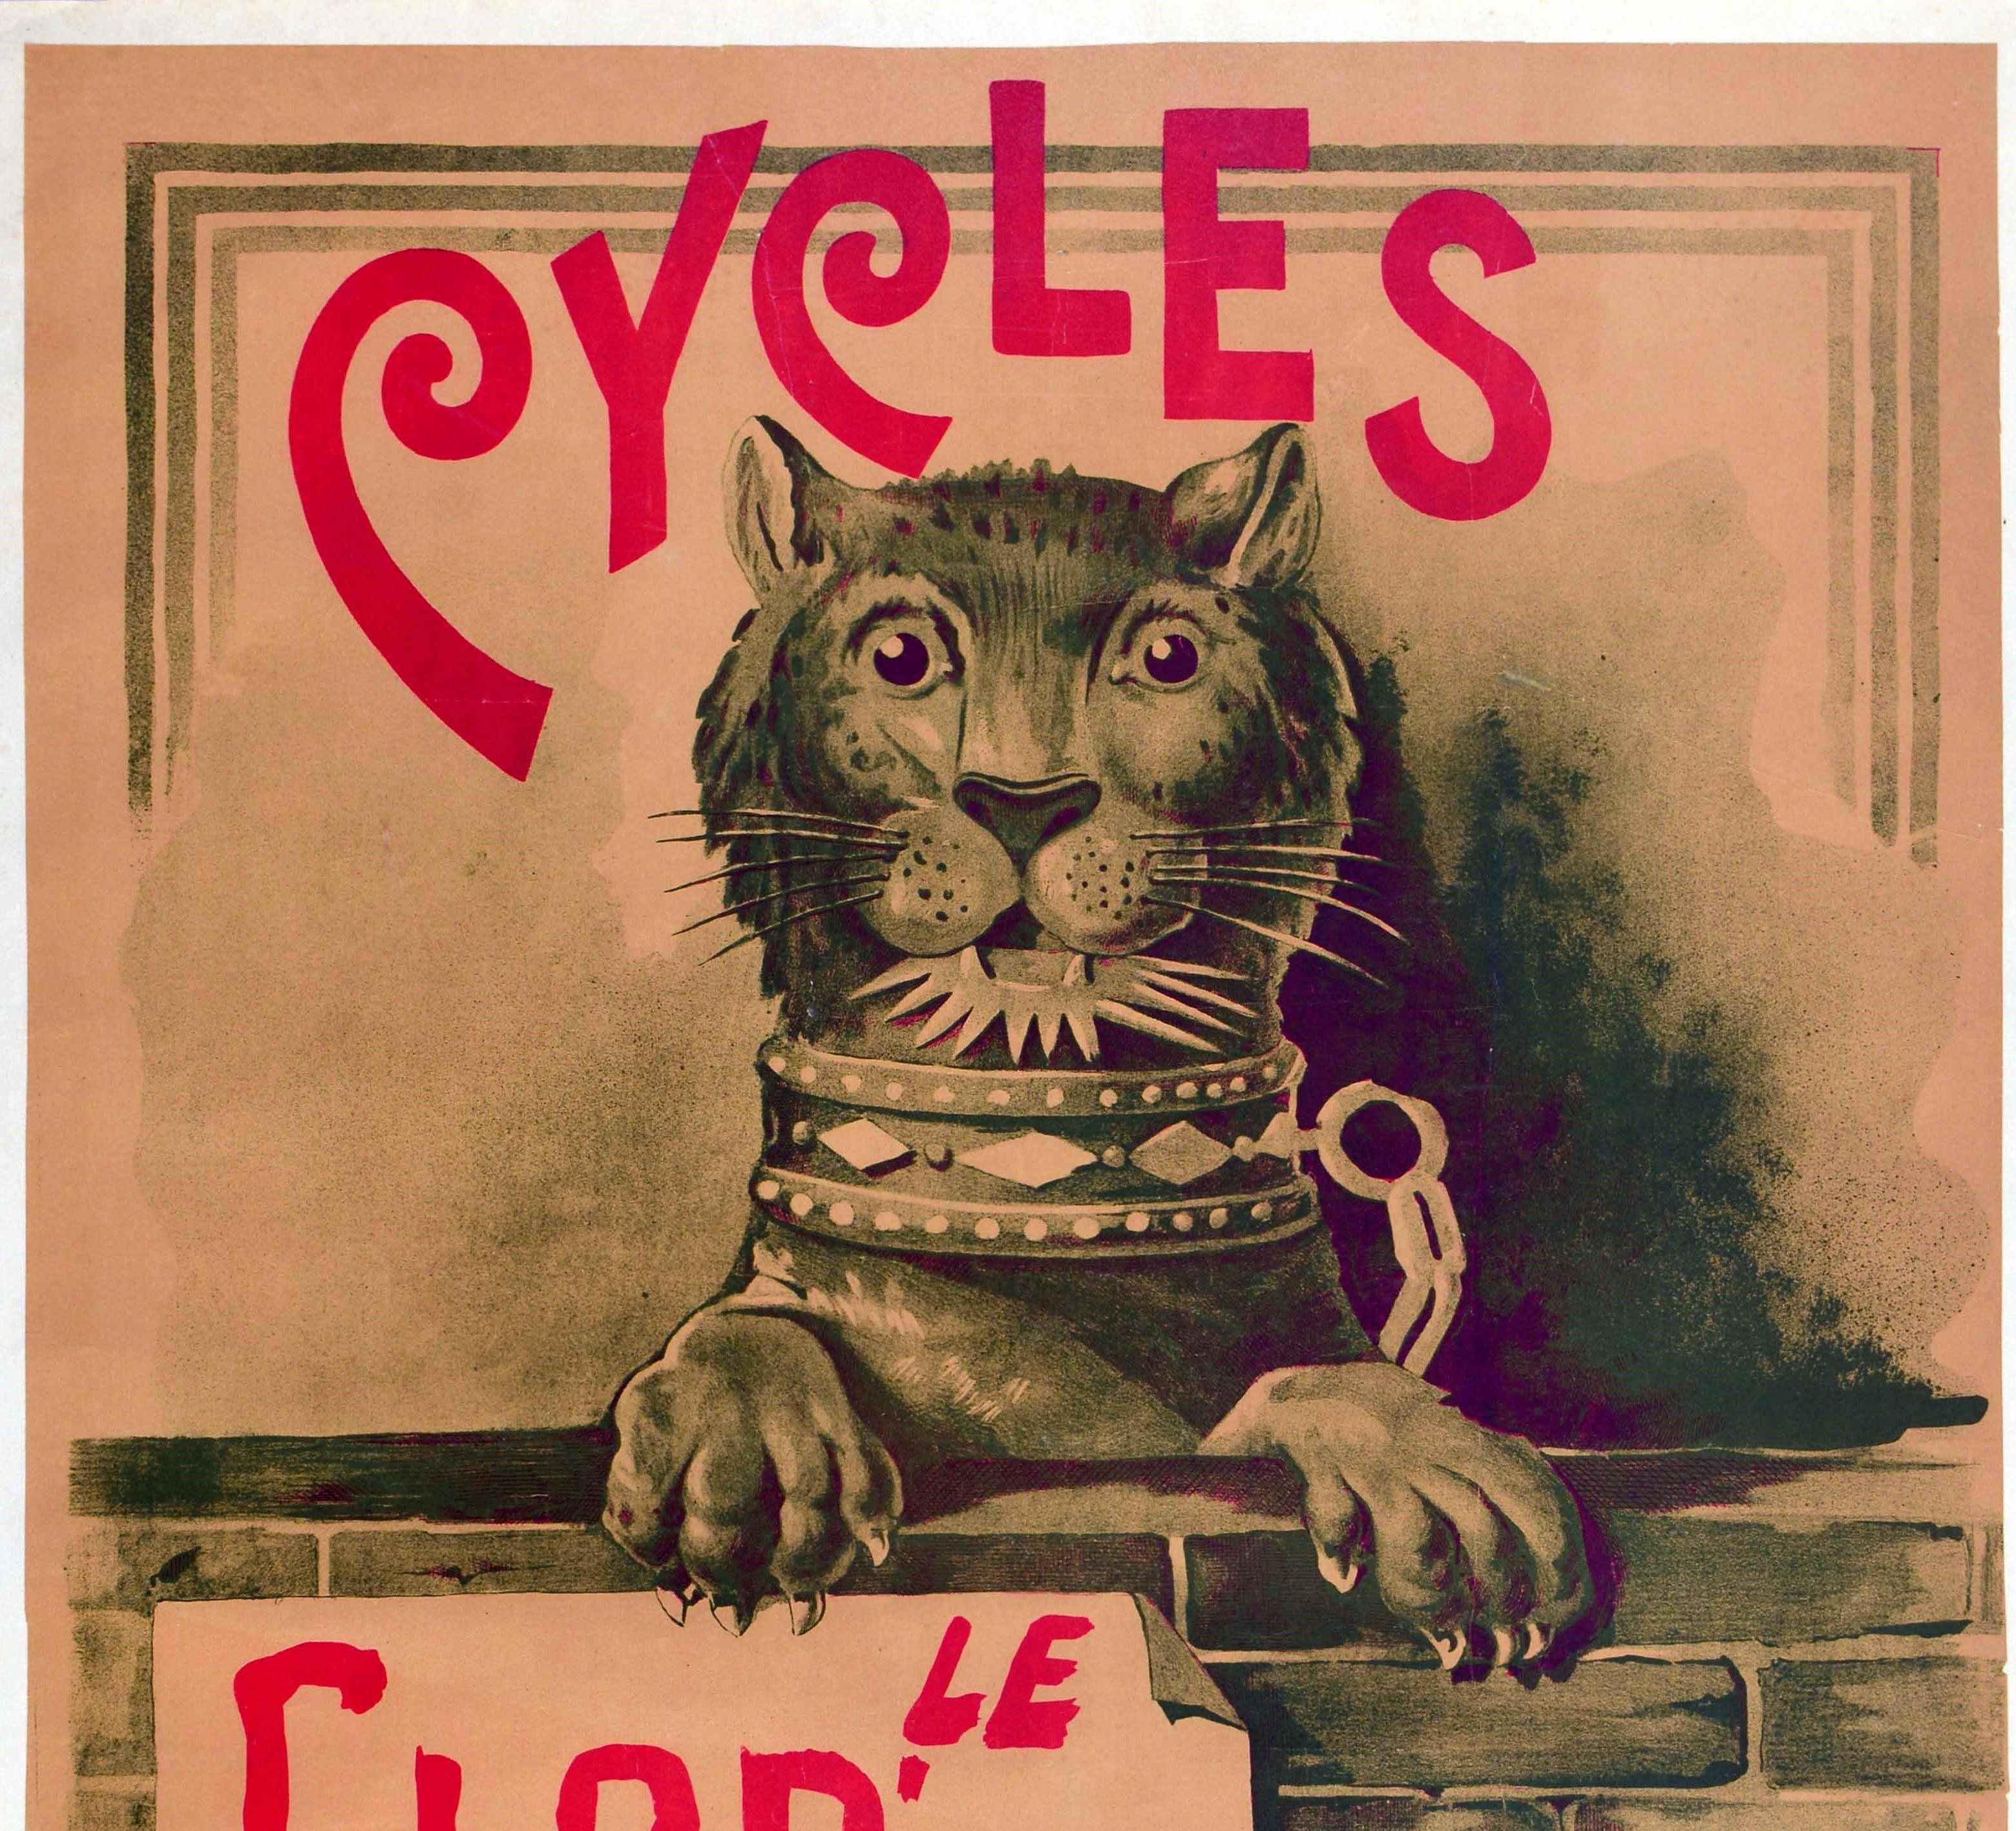 Originales antikes Fahrrad-Werbeplakat für Le Glob' Trotter Cycles Paris mit der großartigen Darstellung einer Löwin, die dem Betrachter entgegenblickt und sich mit ihren Pfoten an einer Backsteinmauer festkrallt, auf der ein Schild für The Globe